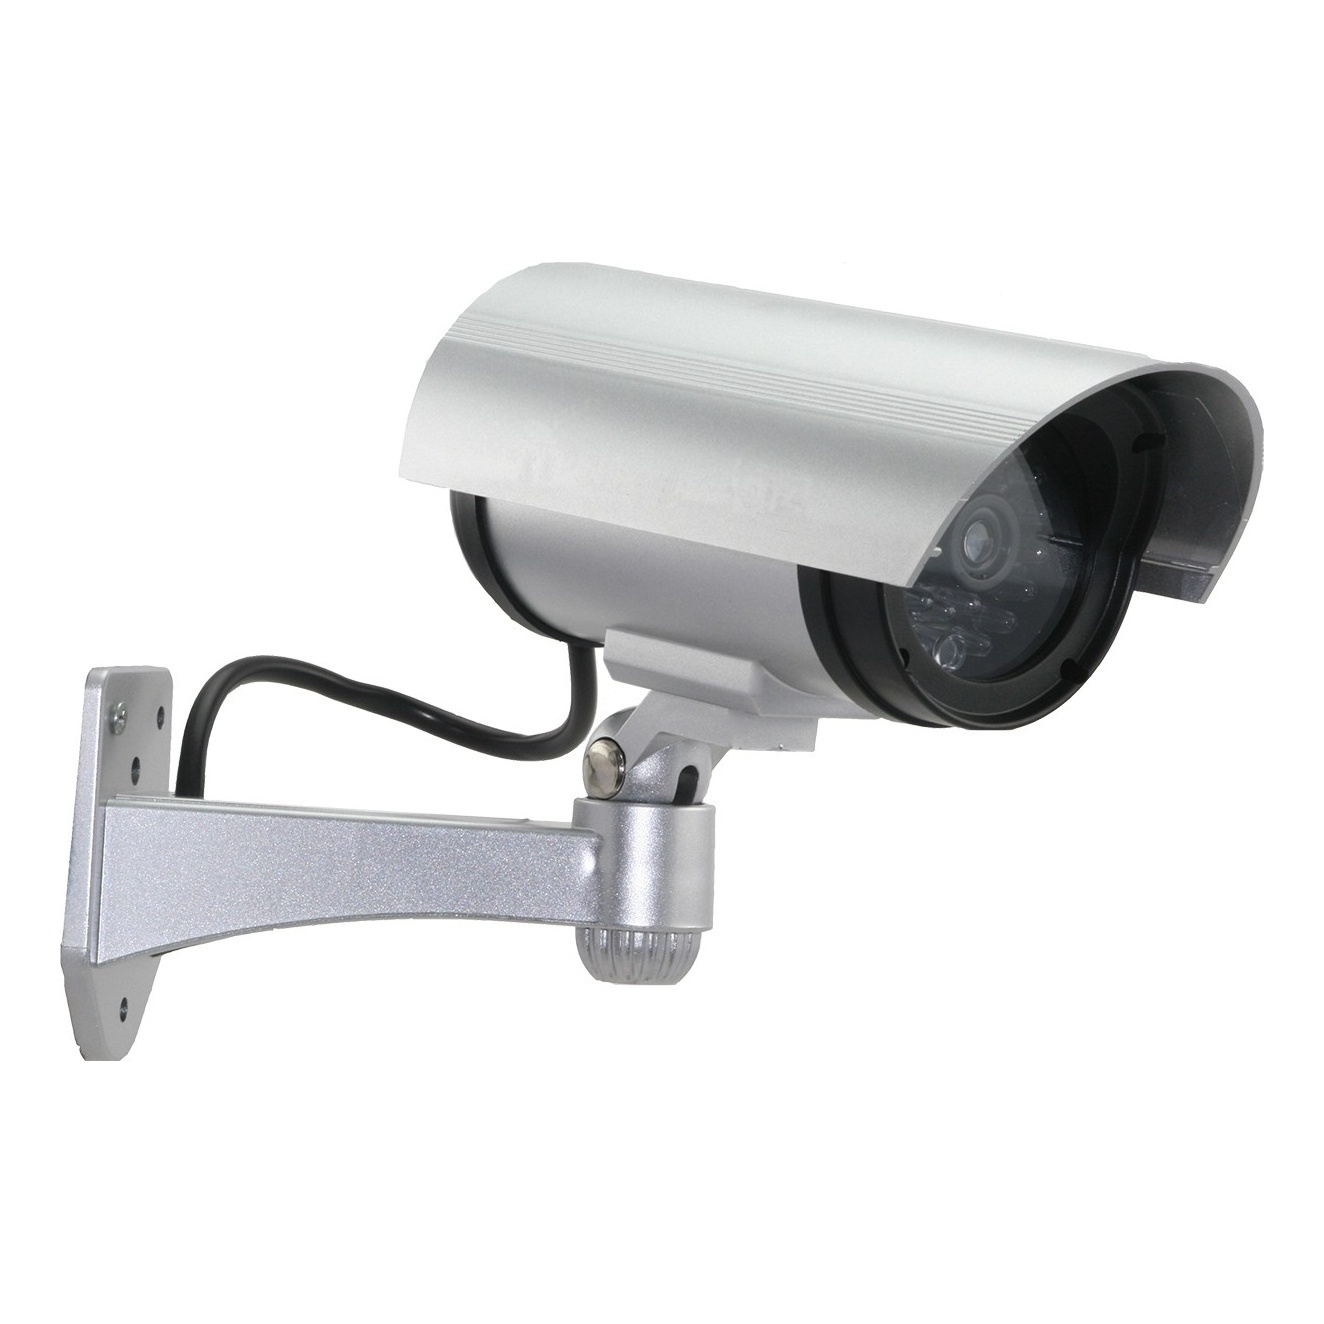 RVi-F03 Муляж камеры видеонаблюдения